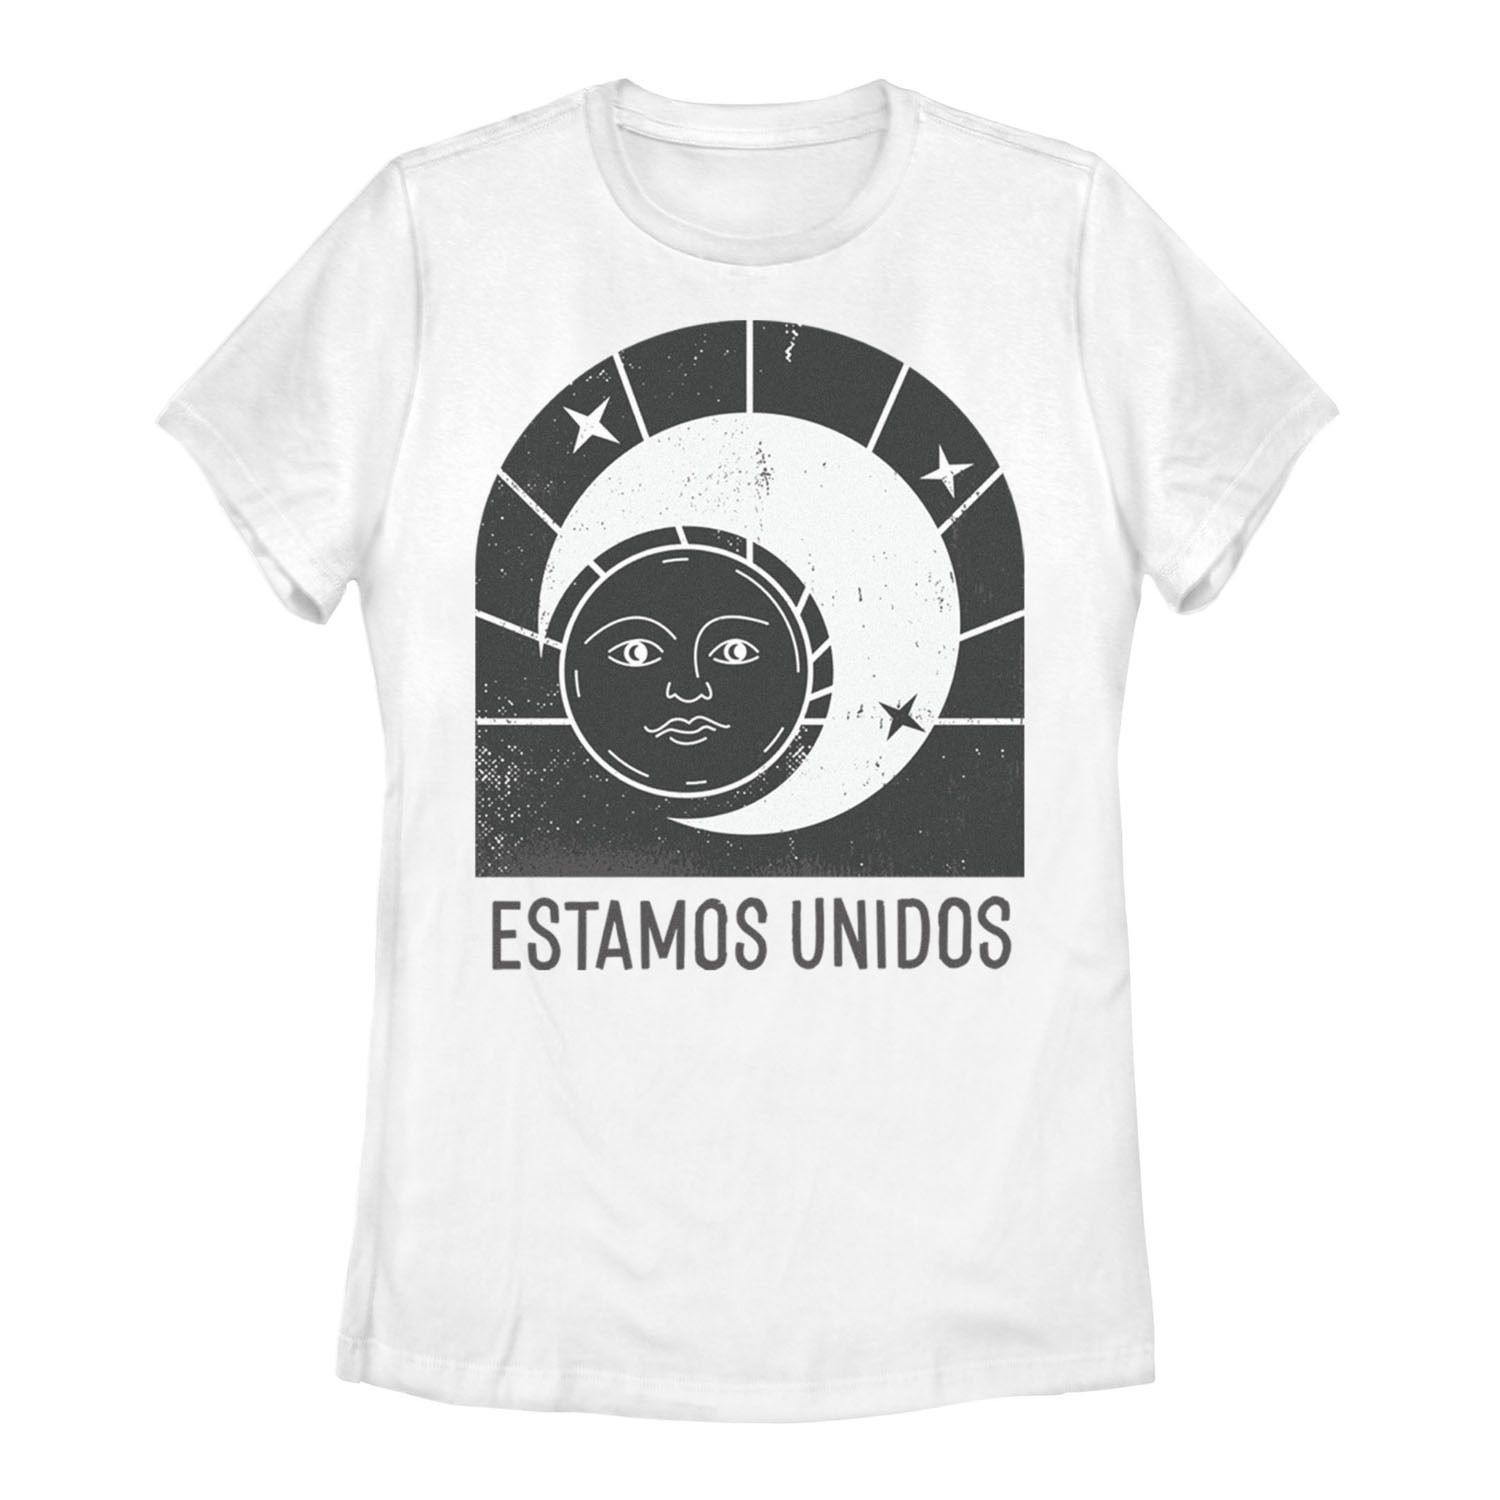 Юниорская футболка Gonzales Estamos Unidos с печатью Sun And Moon Licensed Character